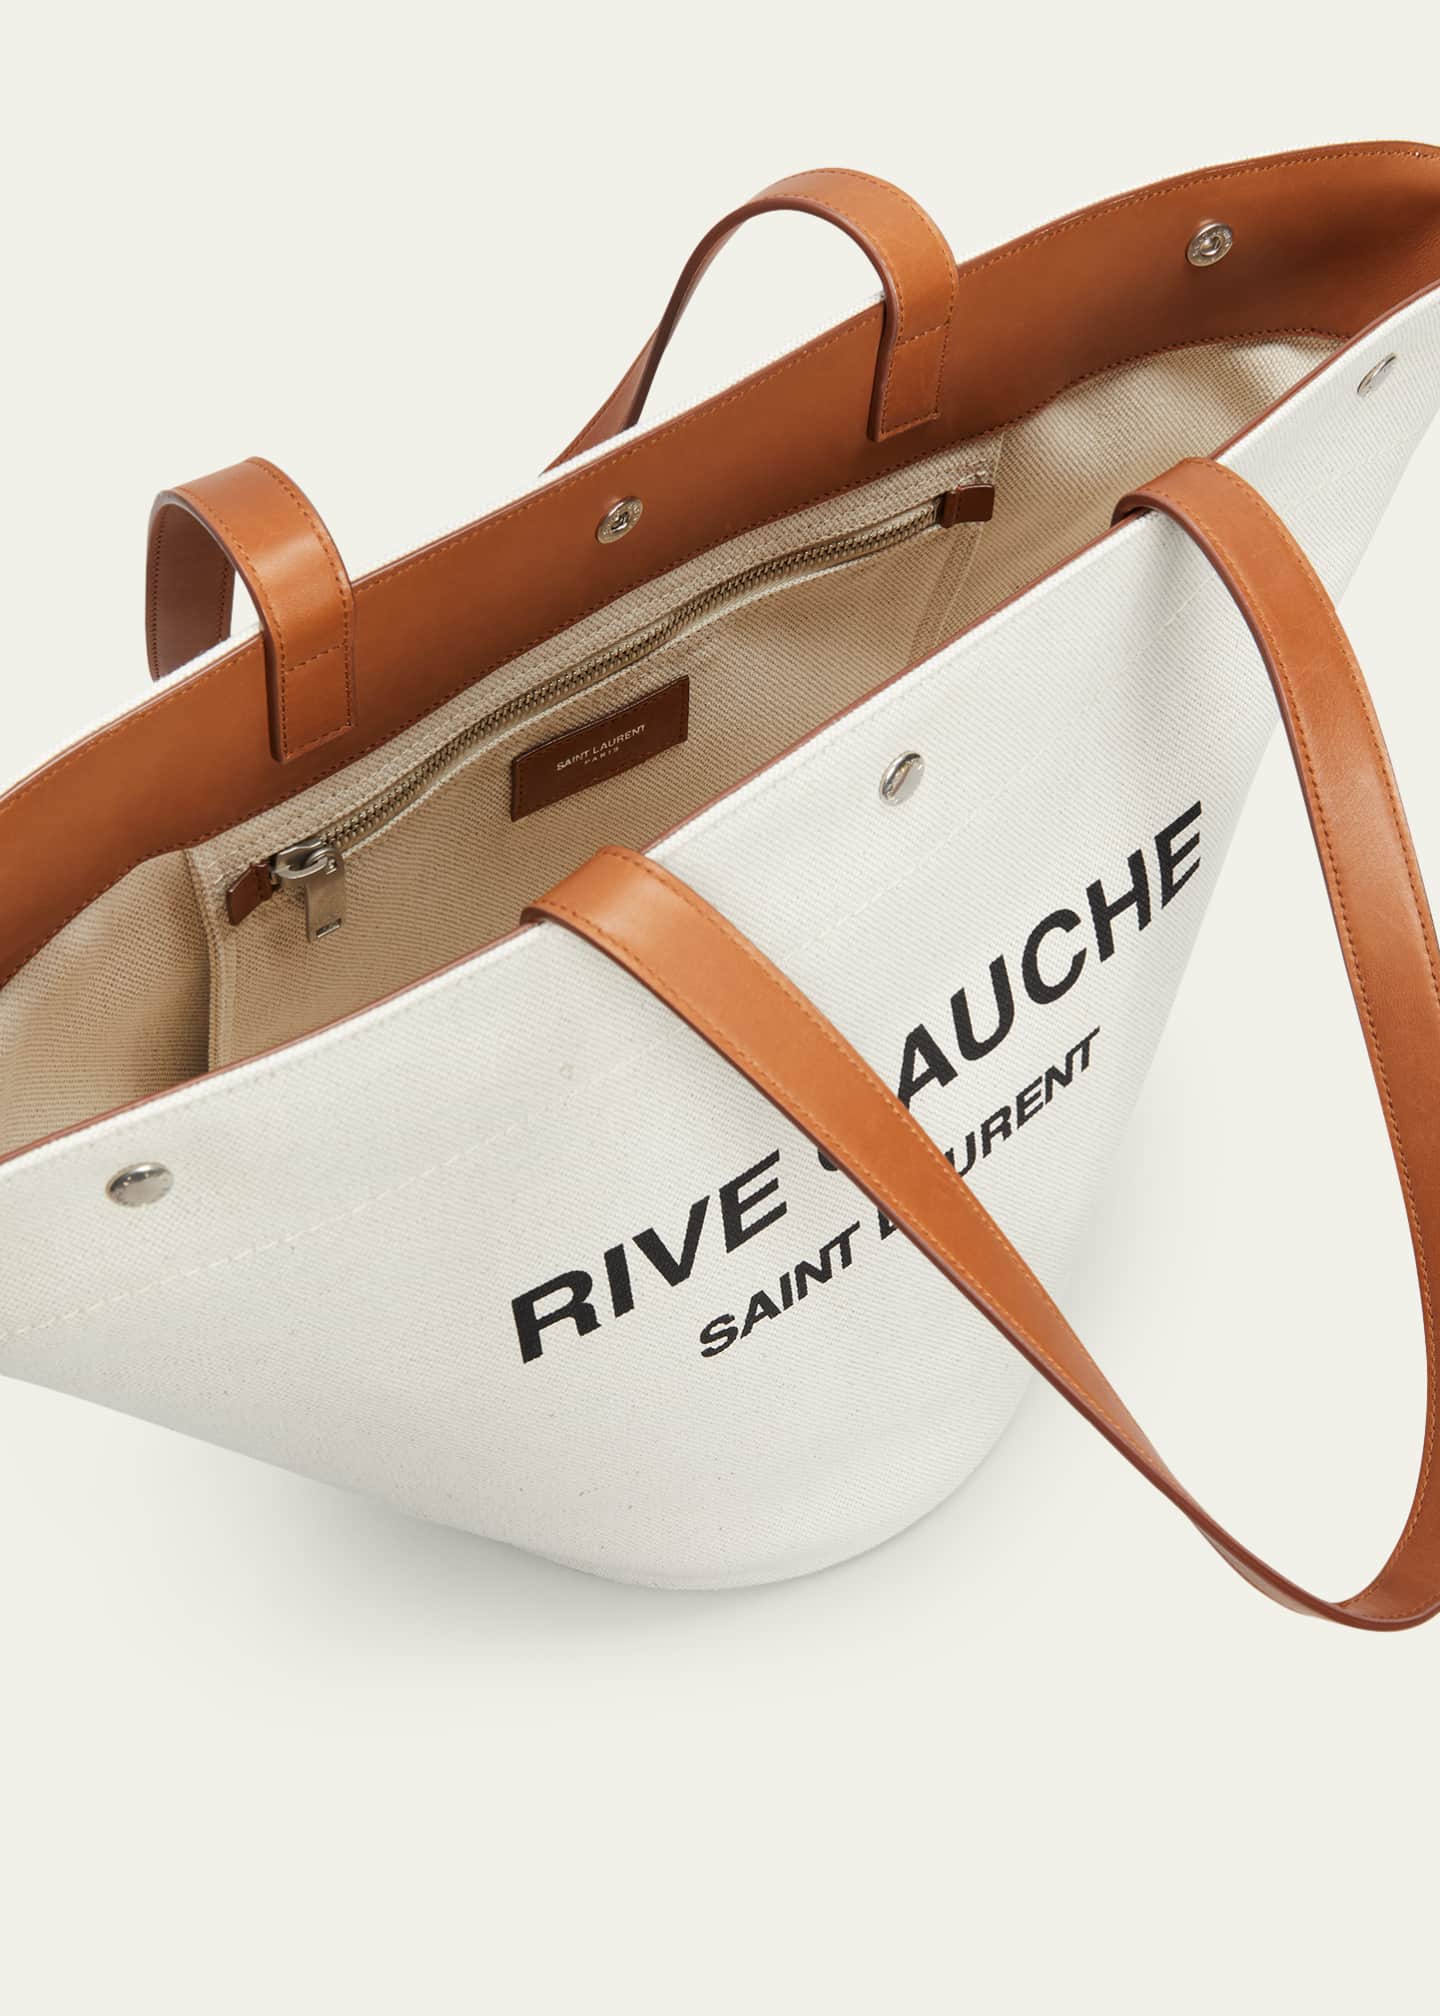 Saint Laurent Rive Gauche Canvas Bucket Bag - ShopStyle